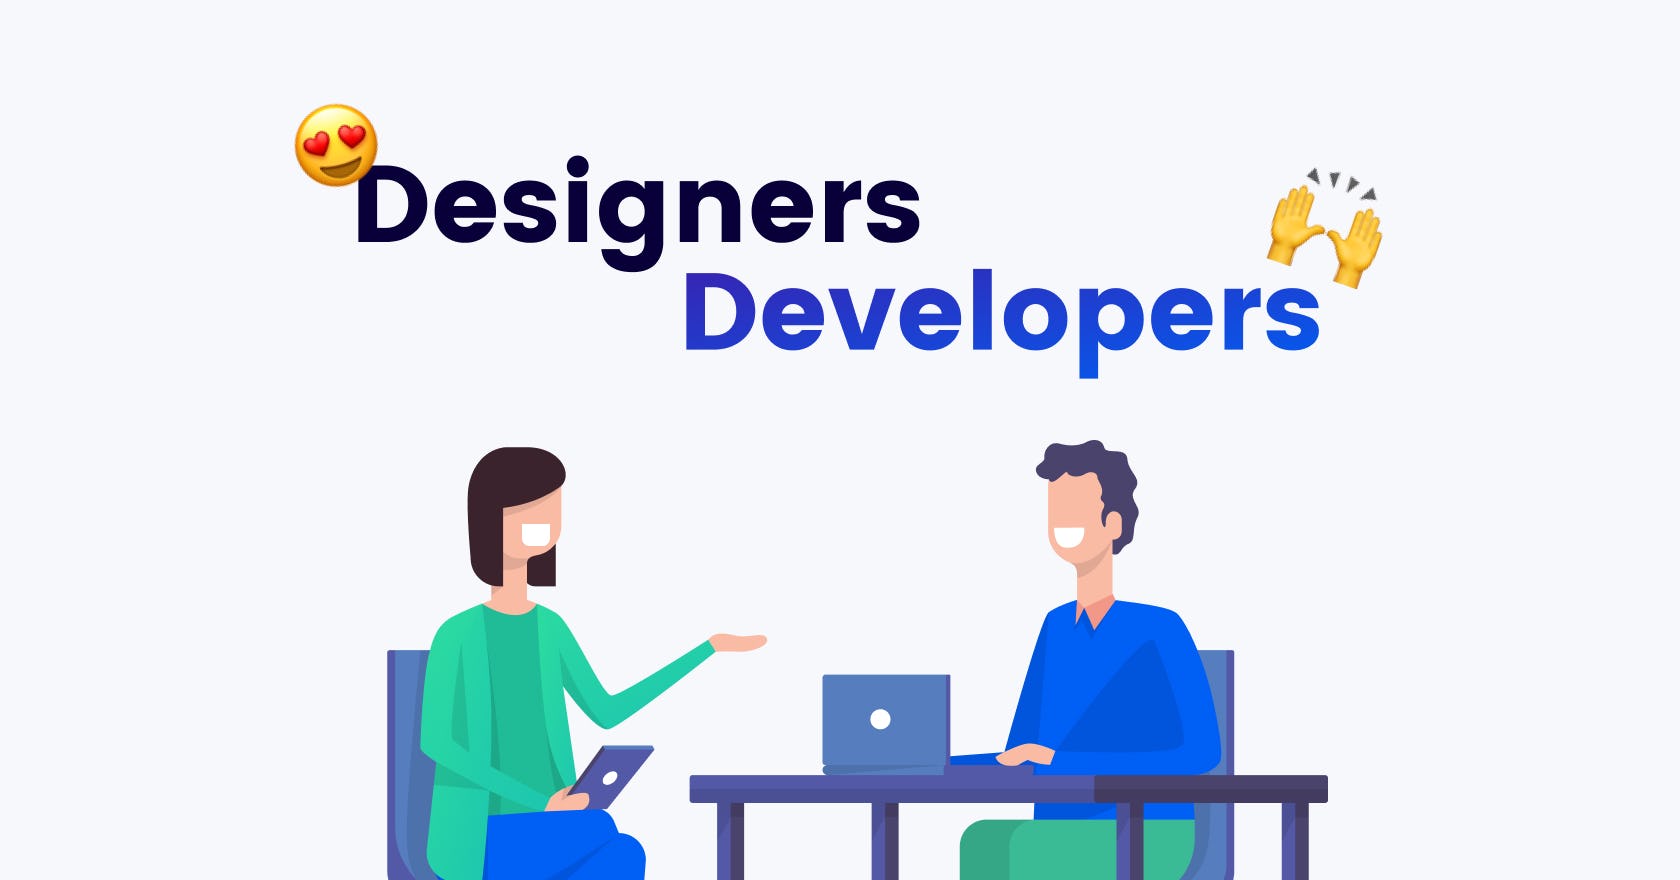 Illustration of a designer and developer collaborating together on an application